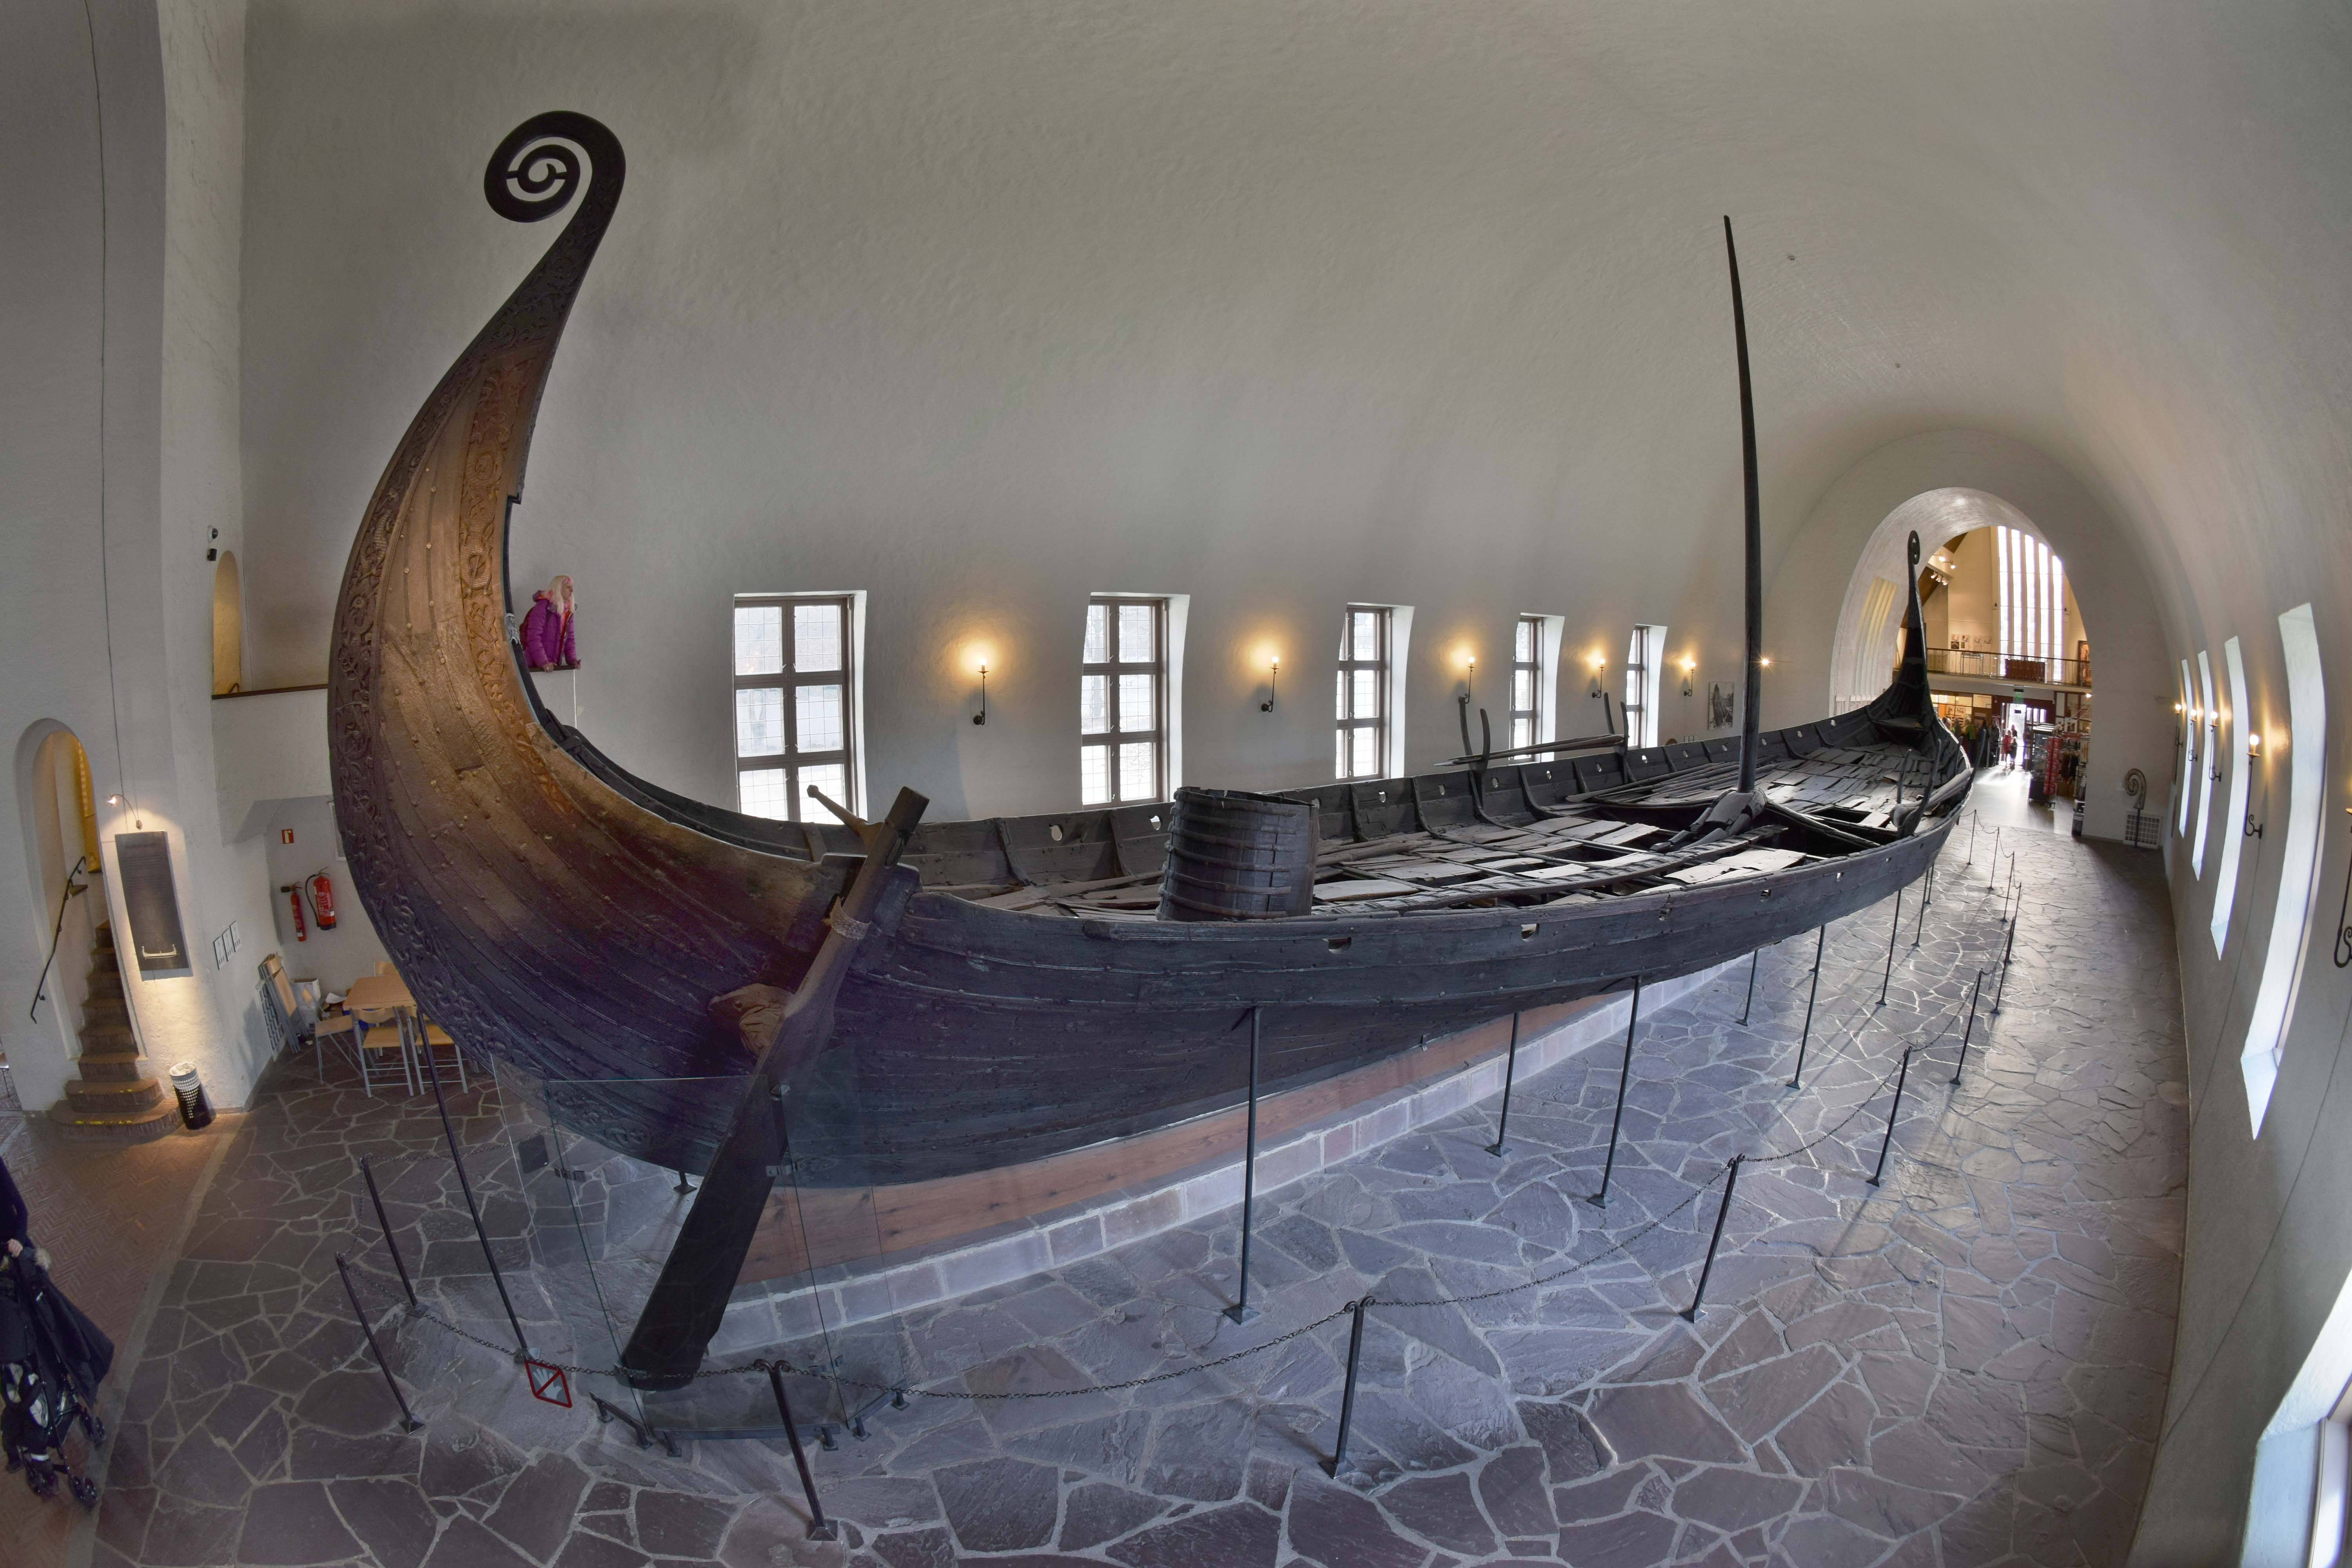 Музей кораблей викингов в норвегии: обзор экспанатов | fiestino.ru